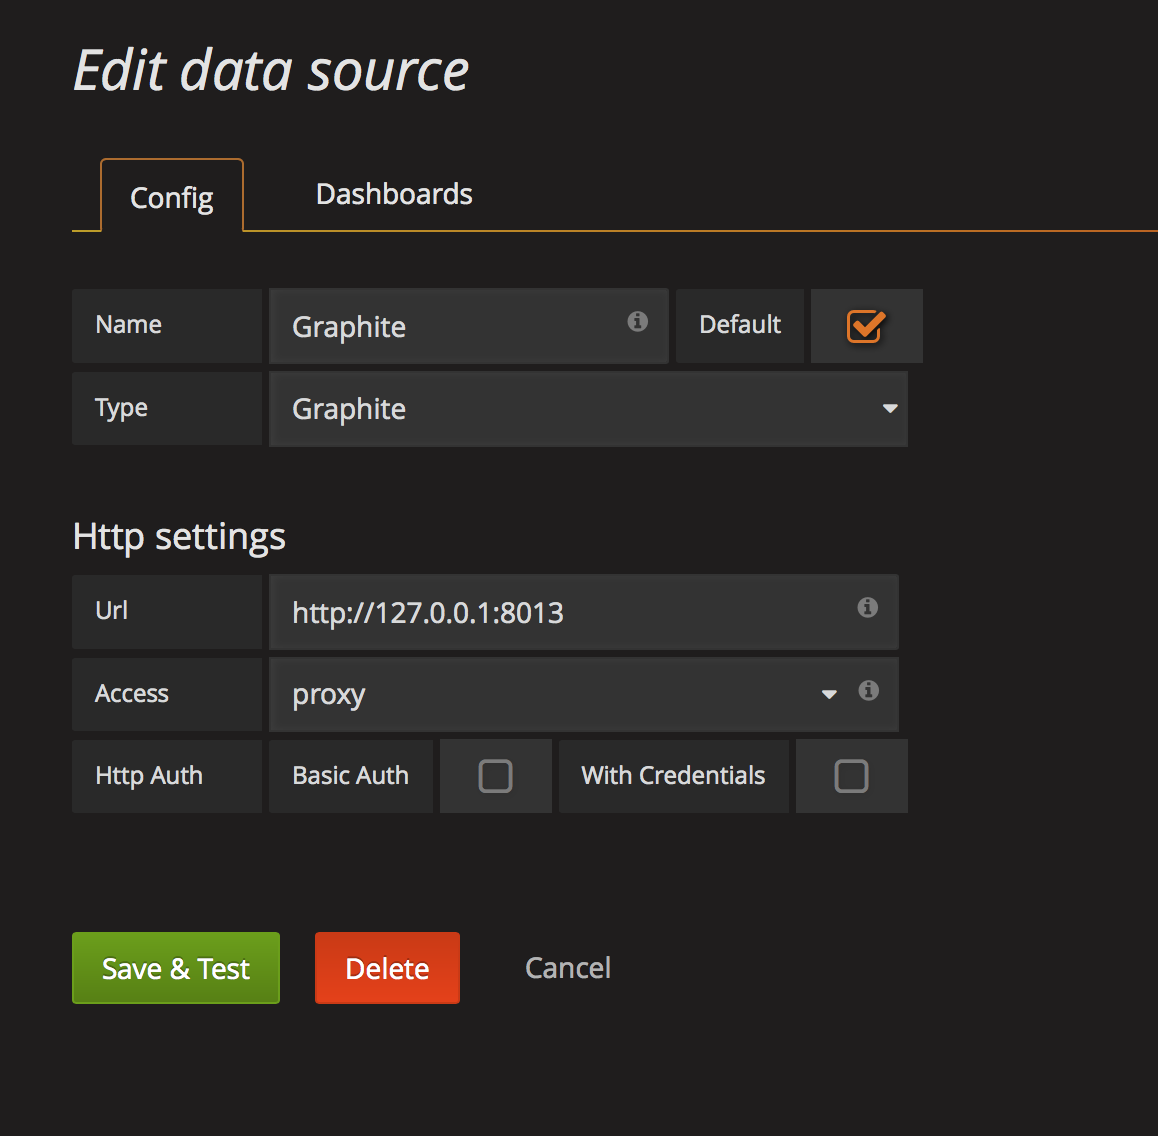 Grafana edit data source screen